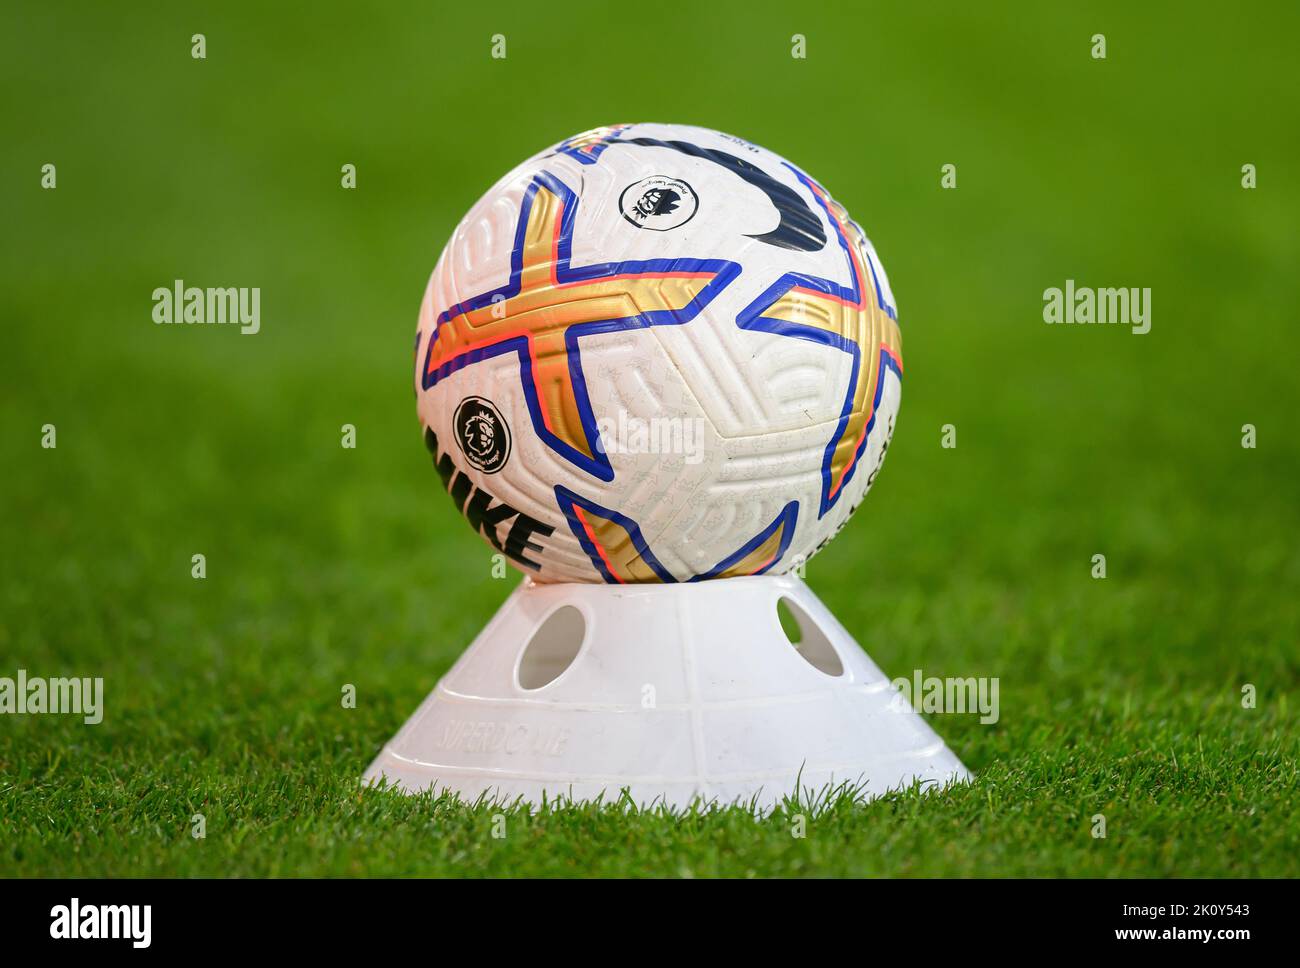 30 août 2022 - Crystal Palace v Brentford - Premier League - Selhurst Park le ballon de match officiel Nike se trouve sur un cône utilisé dans le système multiball pendant le match à Selhurst Park. Image : Mark pain / Alamy Live News Banque D'Images